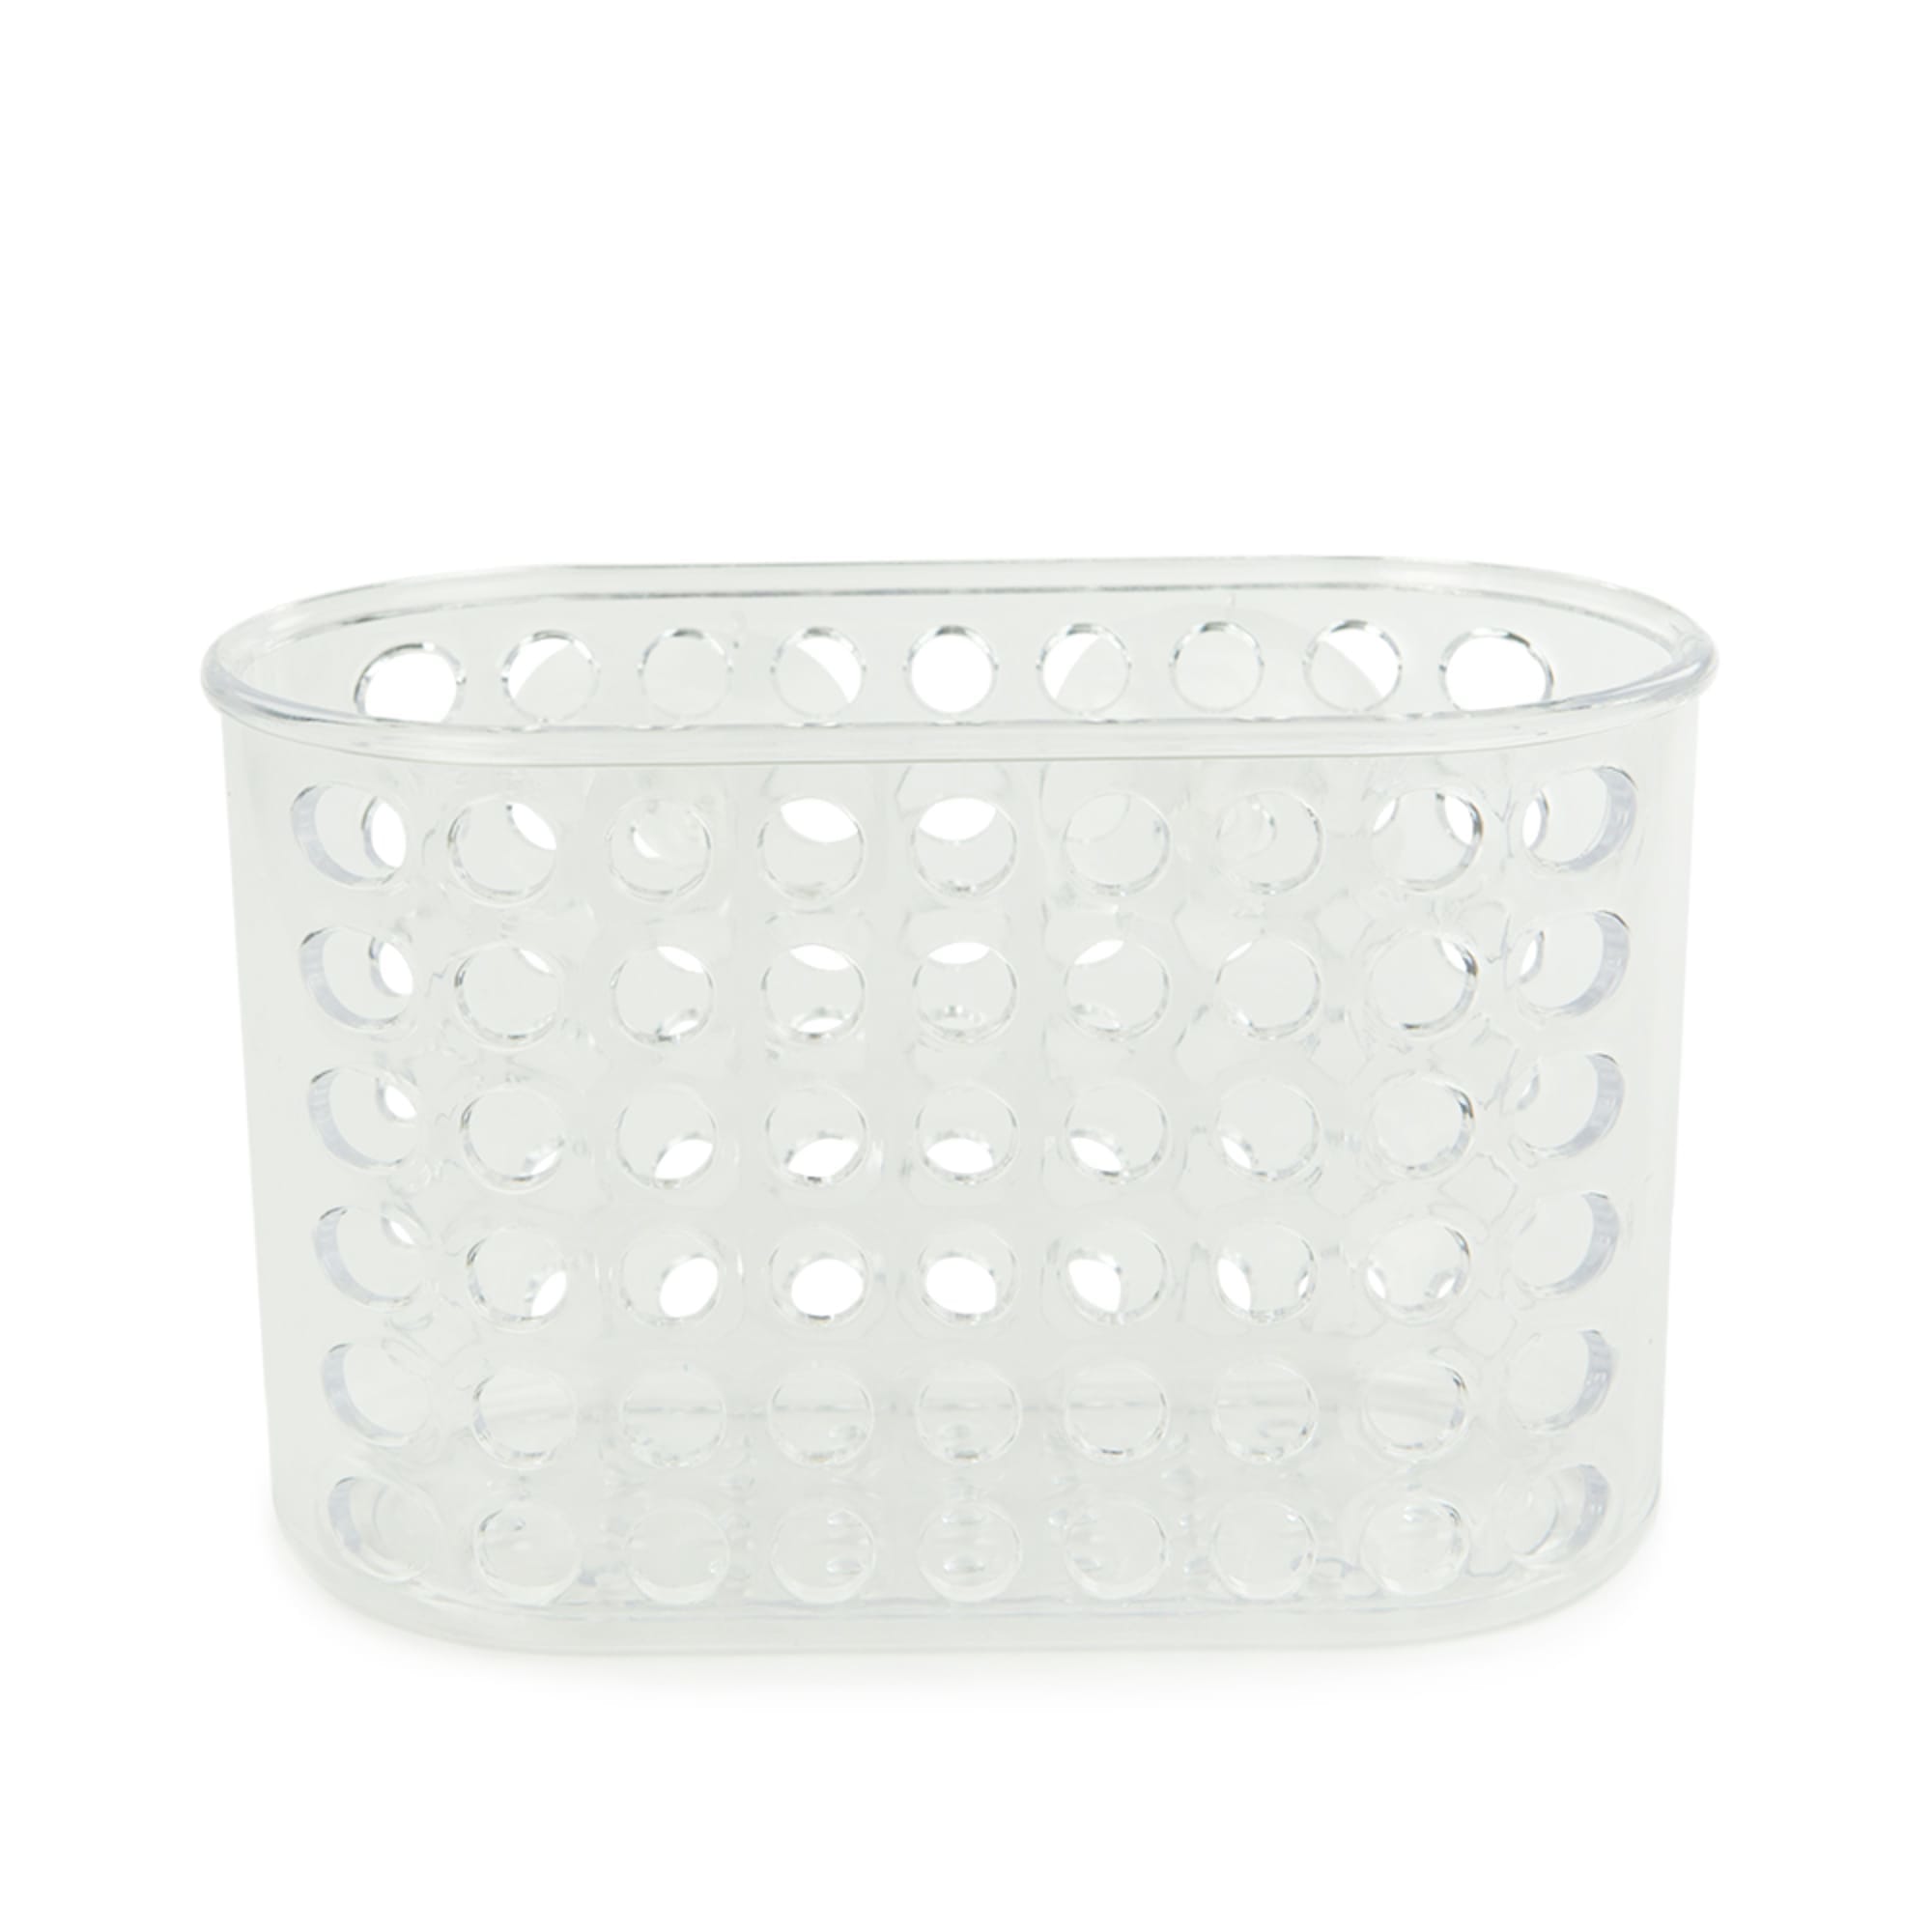 Plastic Suction Bathroom Organization Shower Caddy Basket, Clear